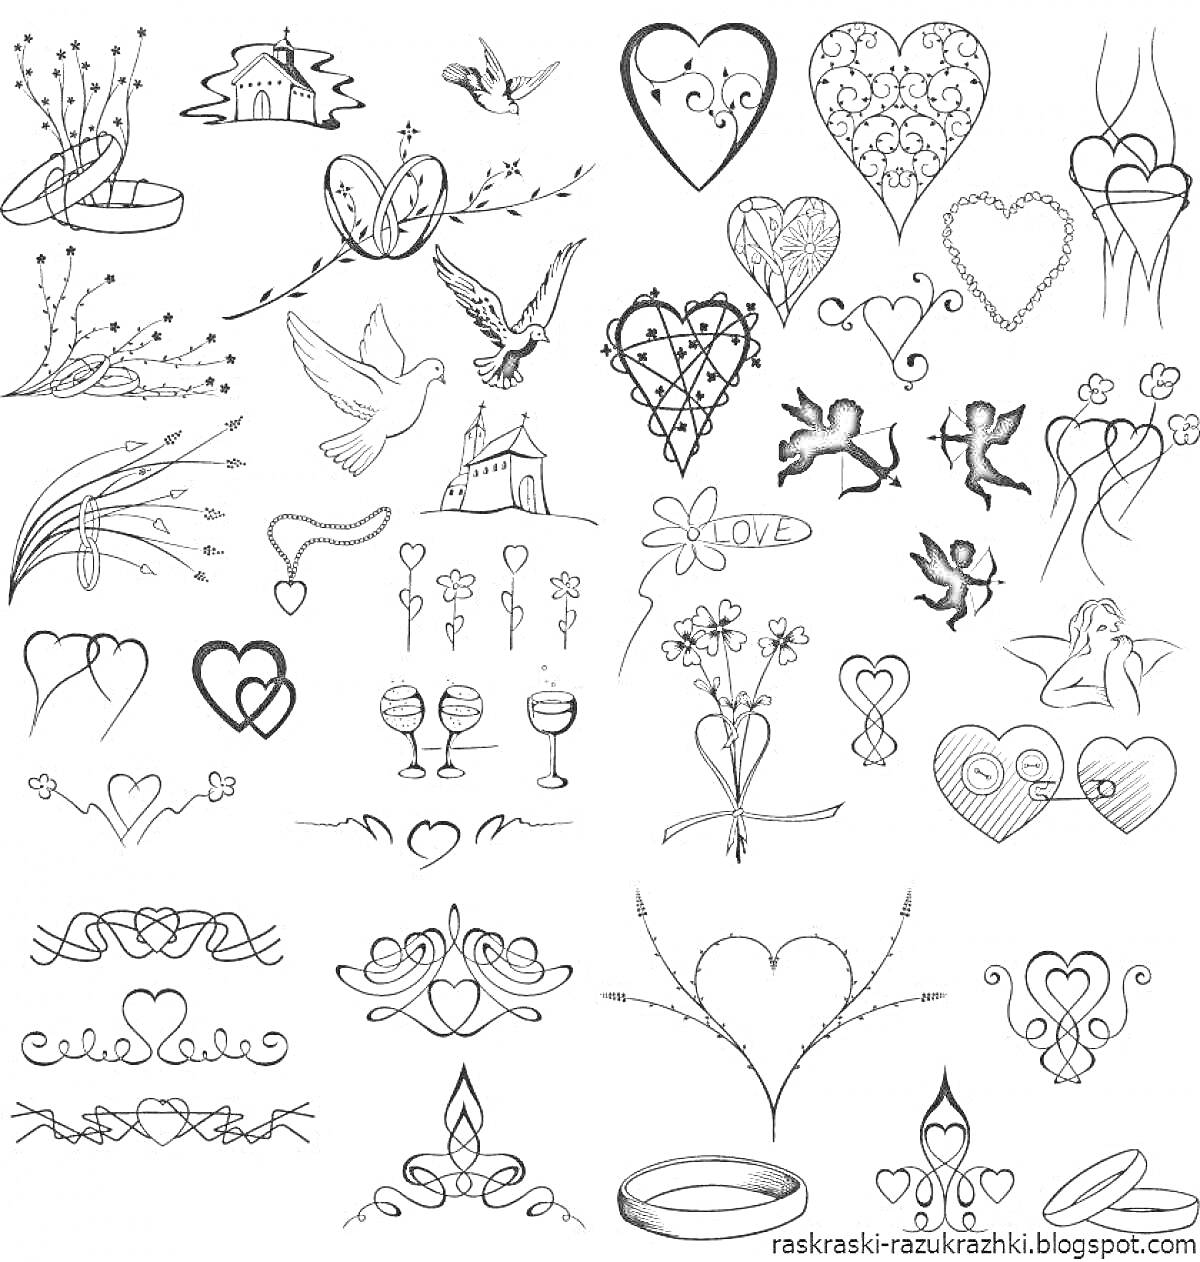 На раскраске изображено: Татуировки, Сердца, Голуби, Цветы, Бабочки, Крылья, Перья, Листья, Бокалы, Лента, Ангел, Кольцо, Корона